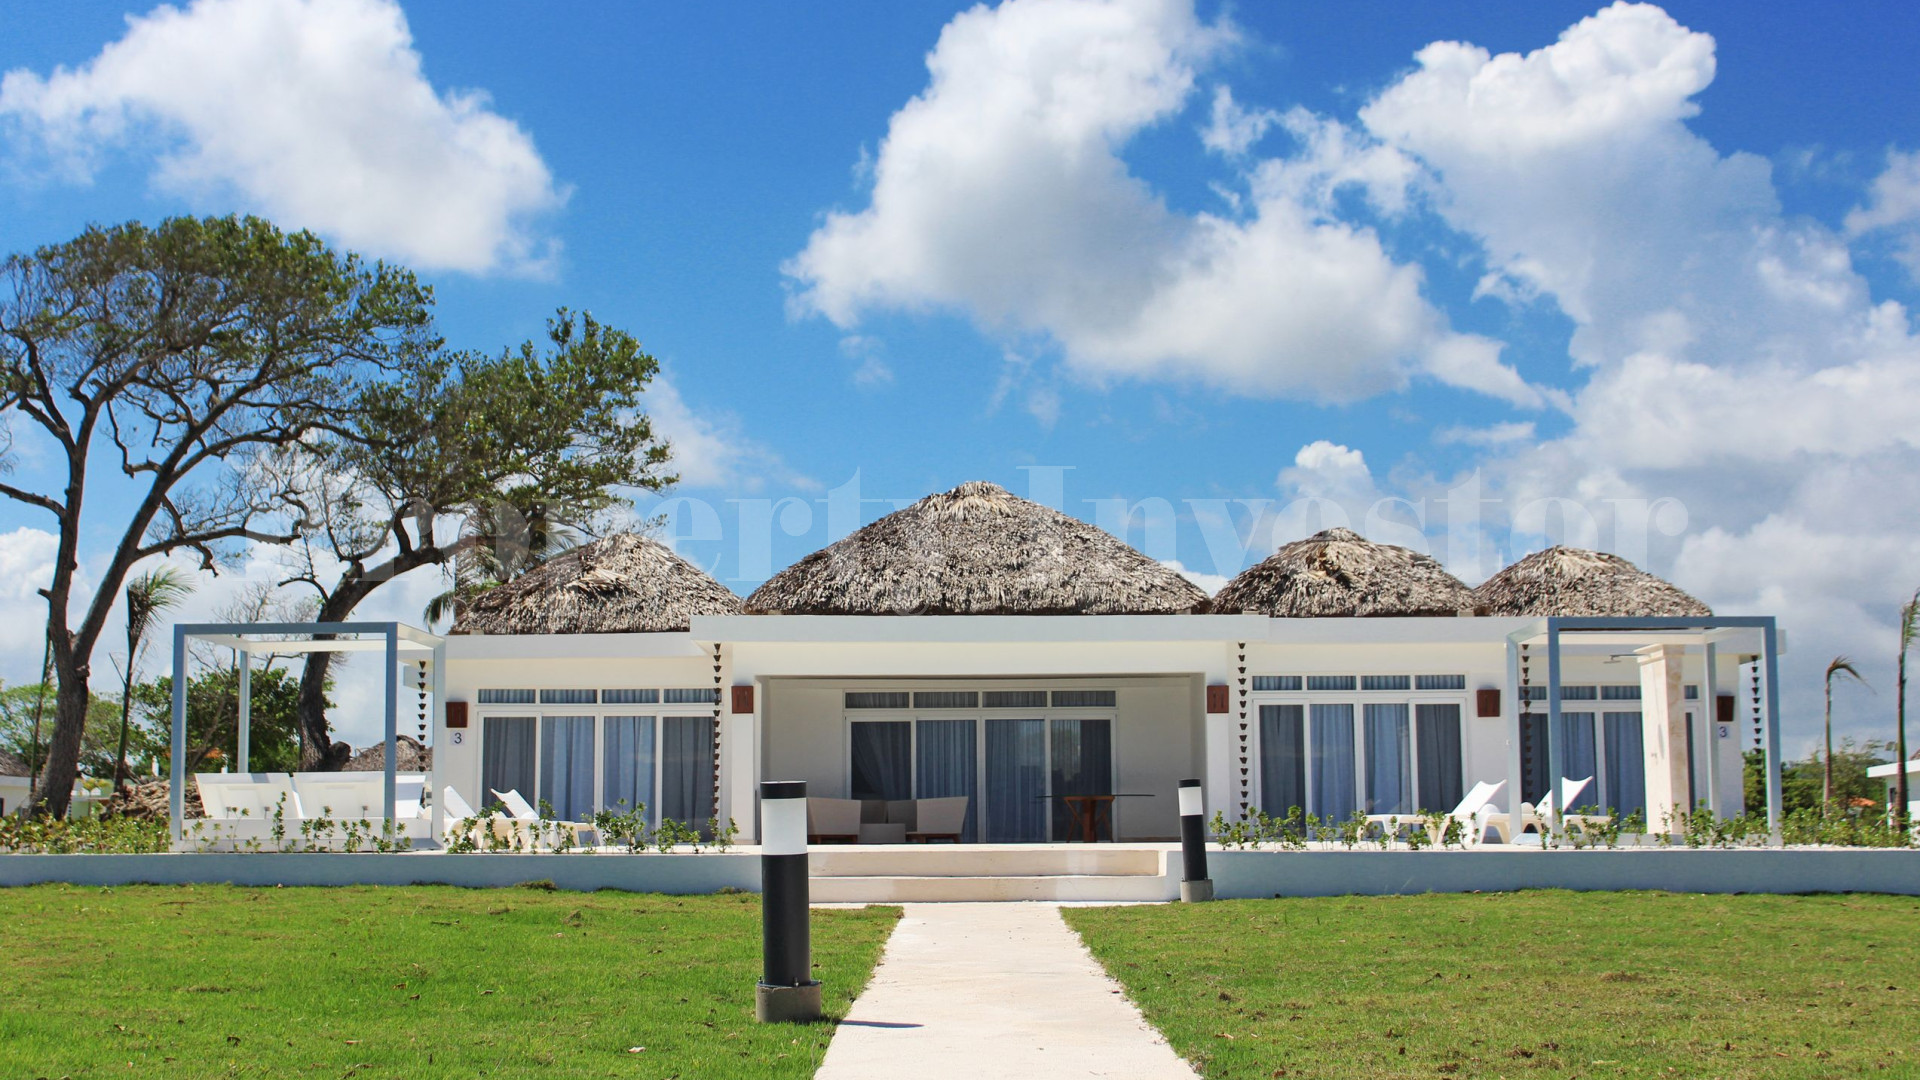 Вилла с 4 спальнями на берегу моря в Доминиканской Республике с финансирование на 30 лет (Вилла 3)